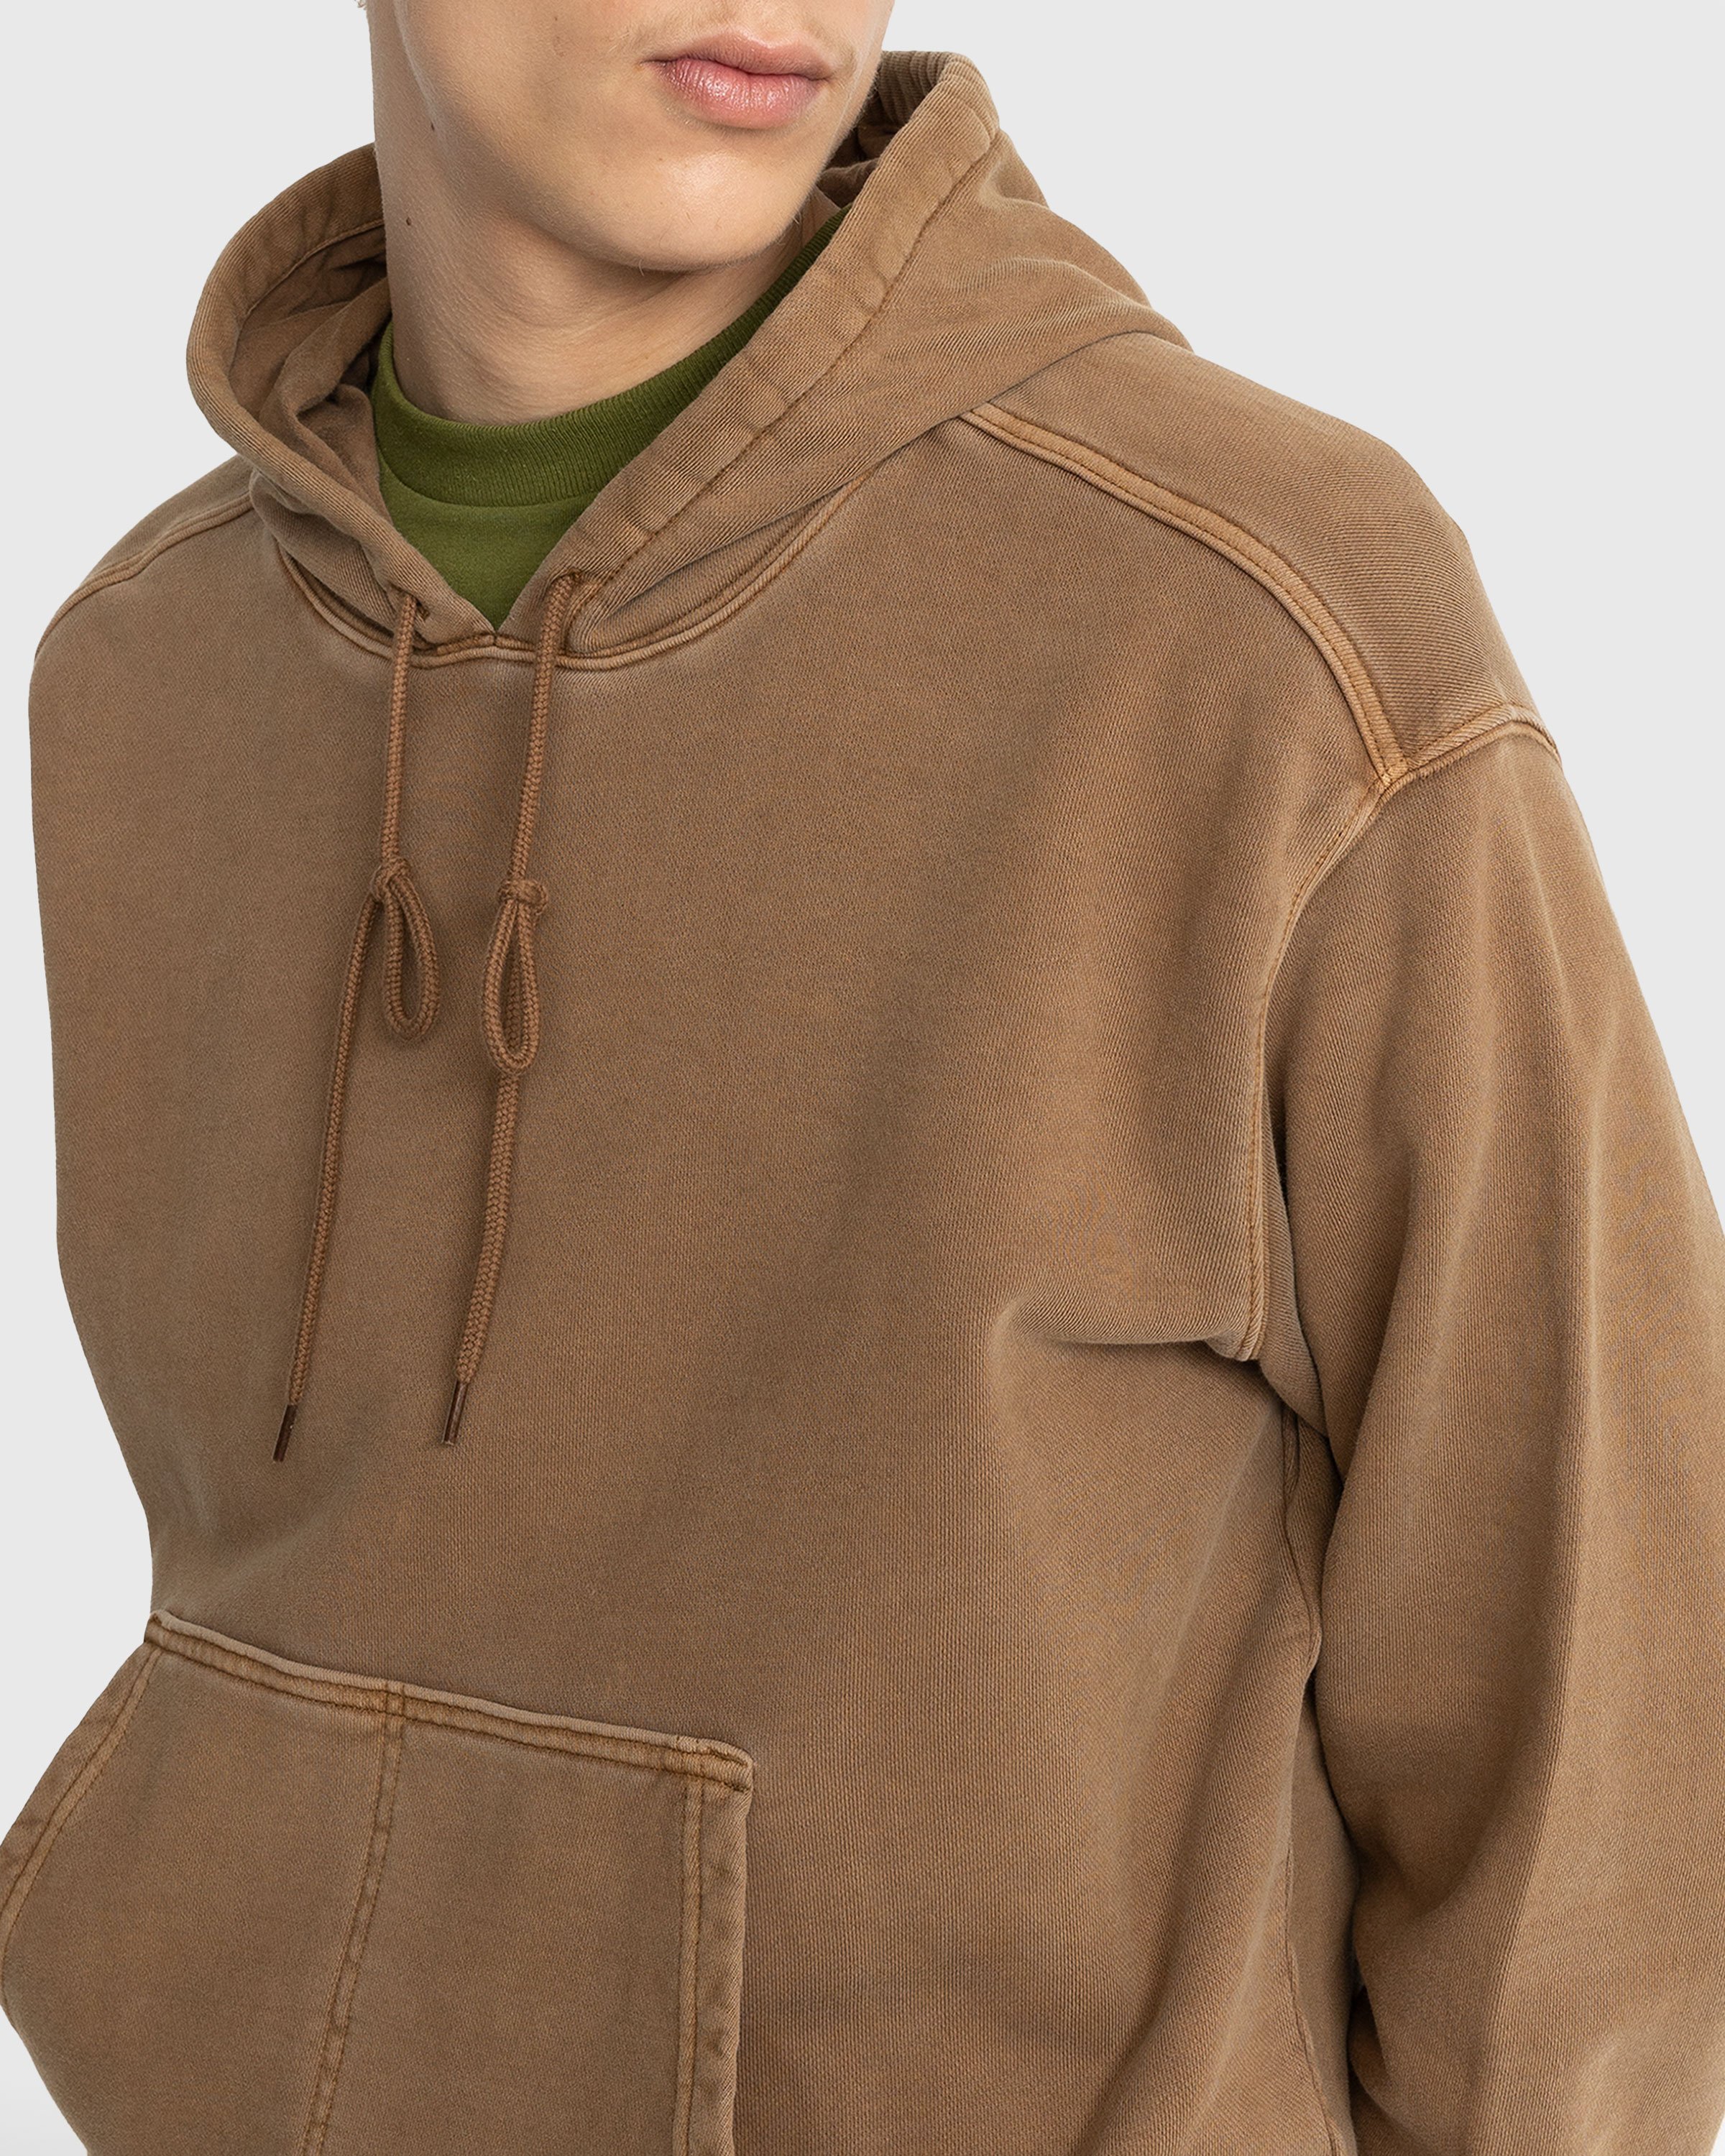 Carhartt WIP - Arling Hoodie Garment-Dyed Tamarind - Clothing - Brown - Image 5